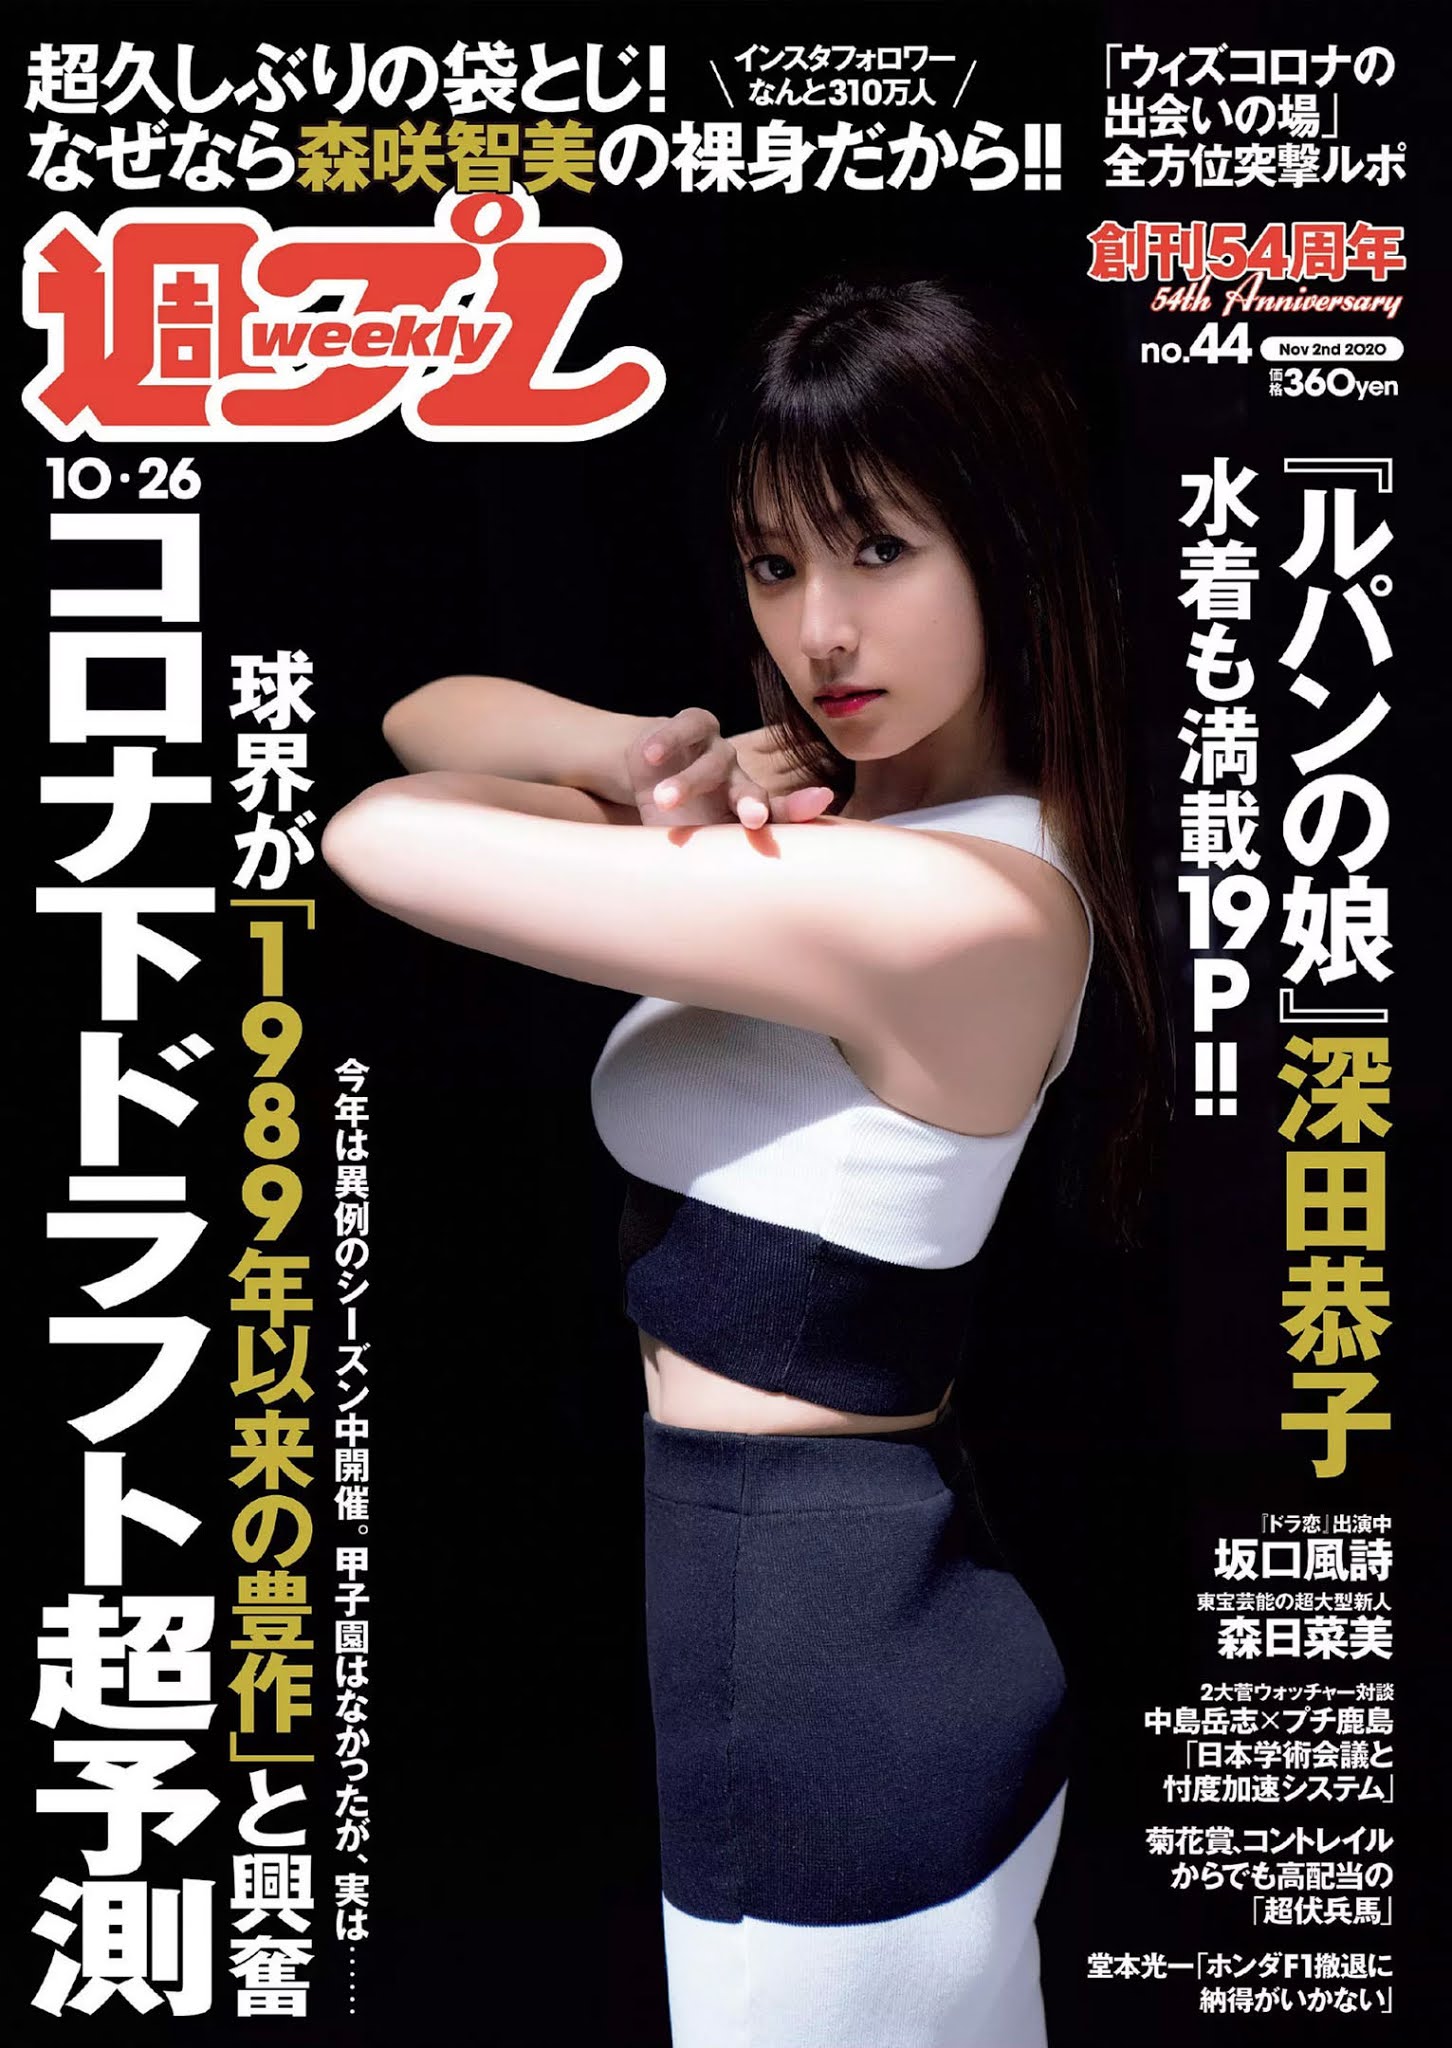 Kyoko Fukada 深田恭子, Weekly Playboy 2020 No.44 (週刊プレイボーイ 2020年44号)